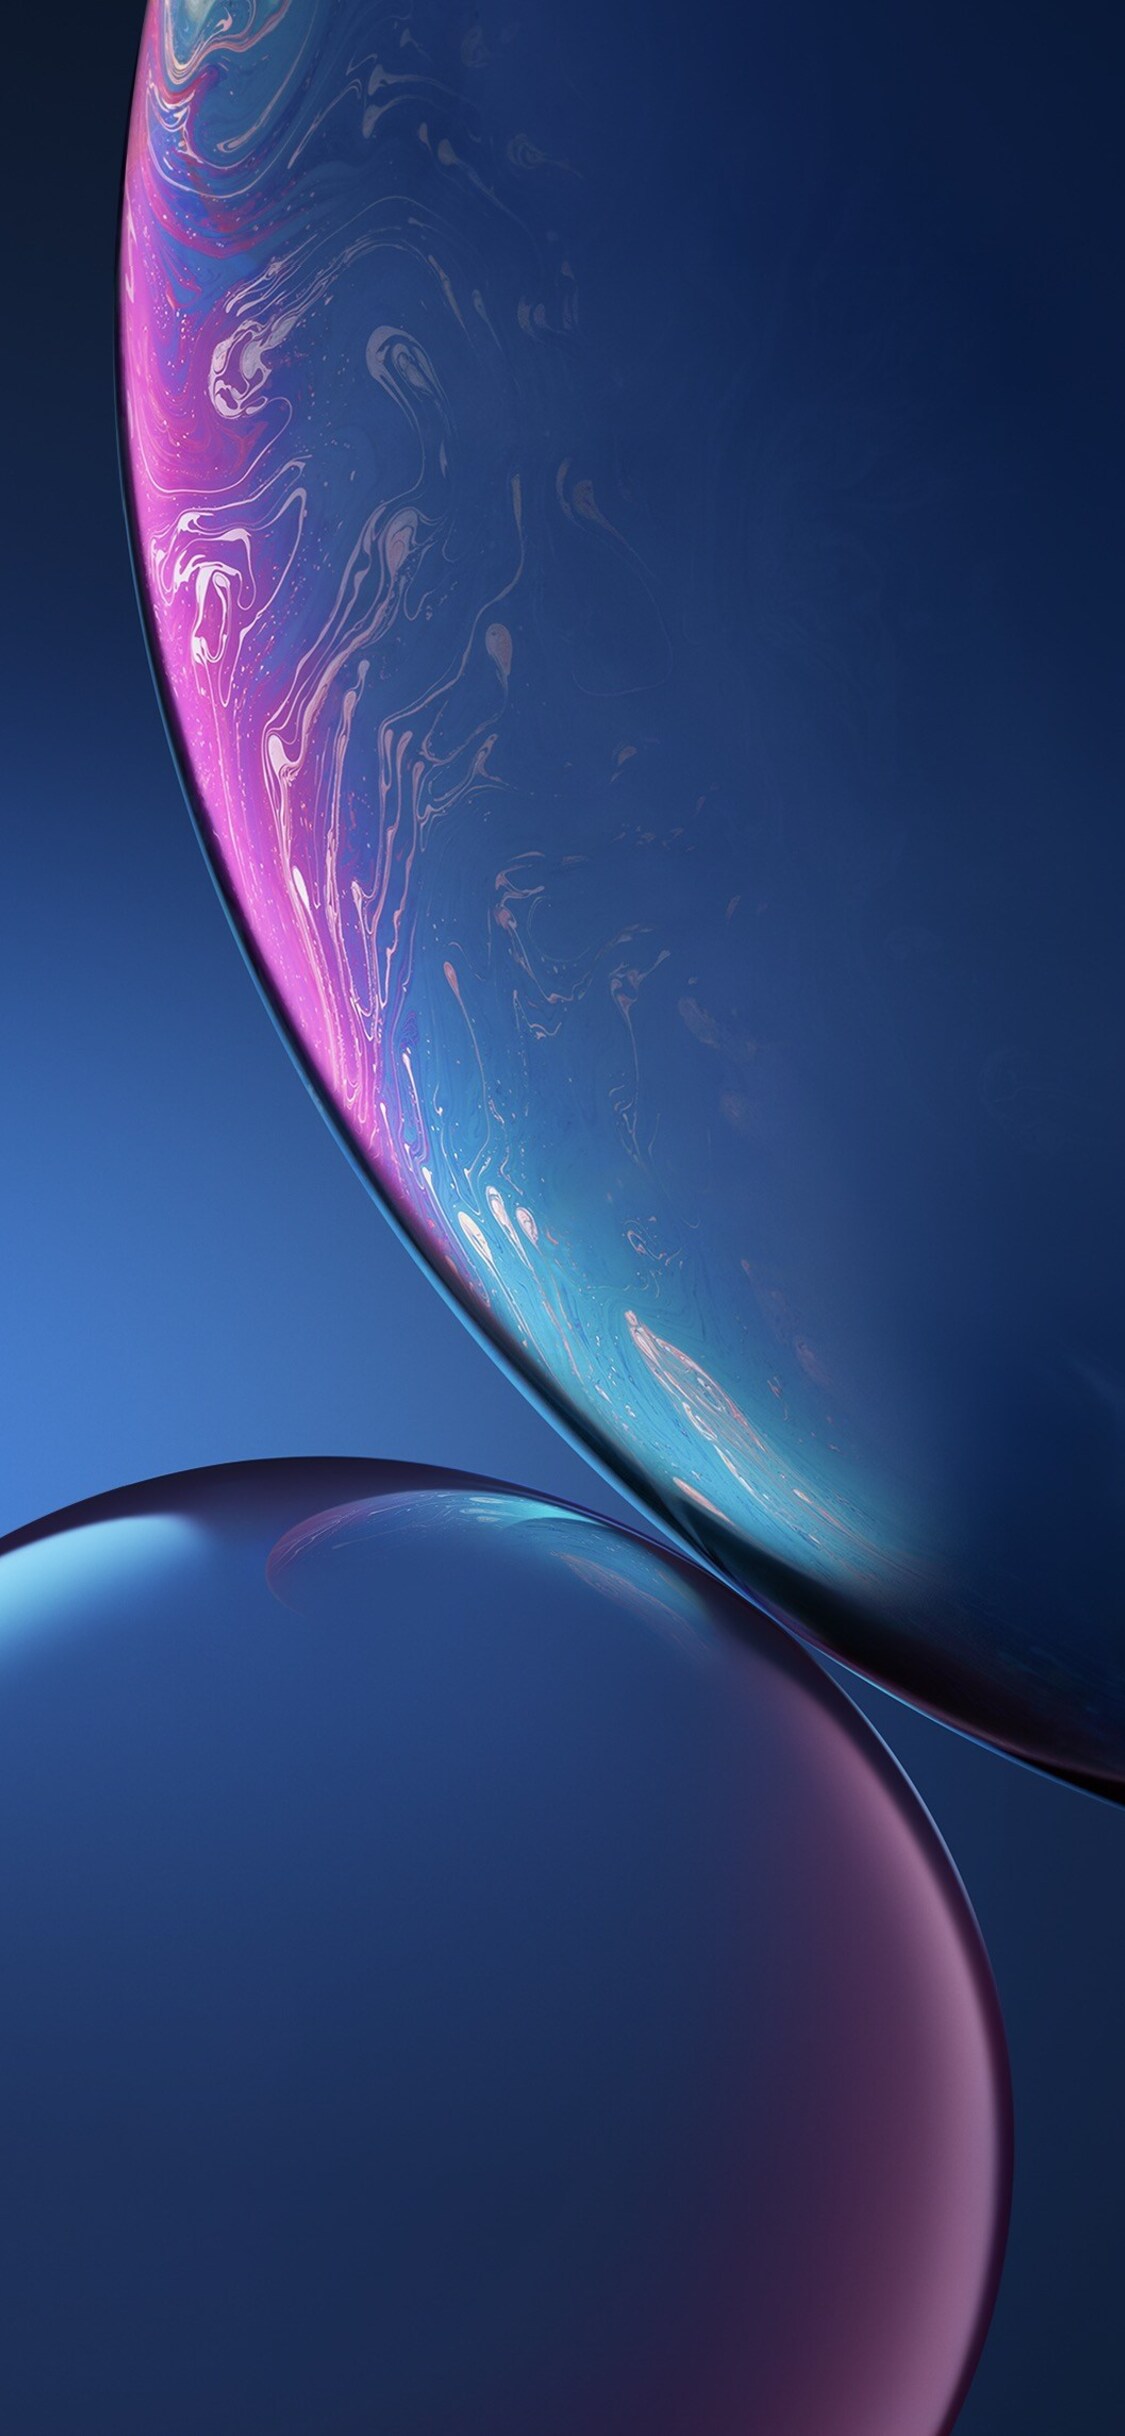 Download Gambar Apple Iphone X Wallpaper Hd Download terbaru 2020